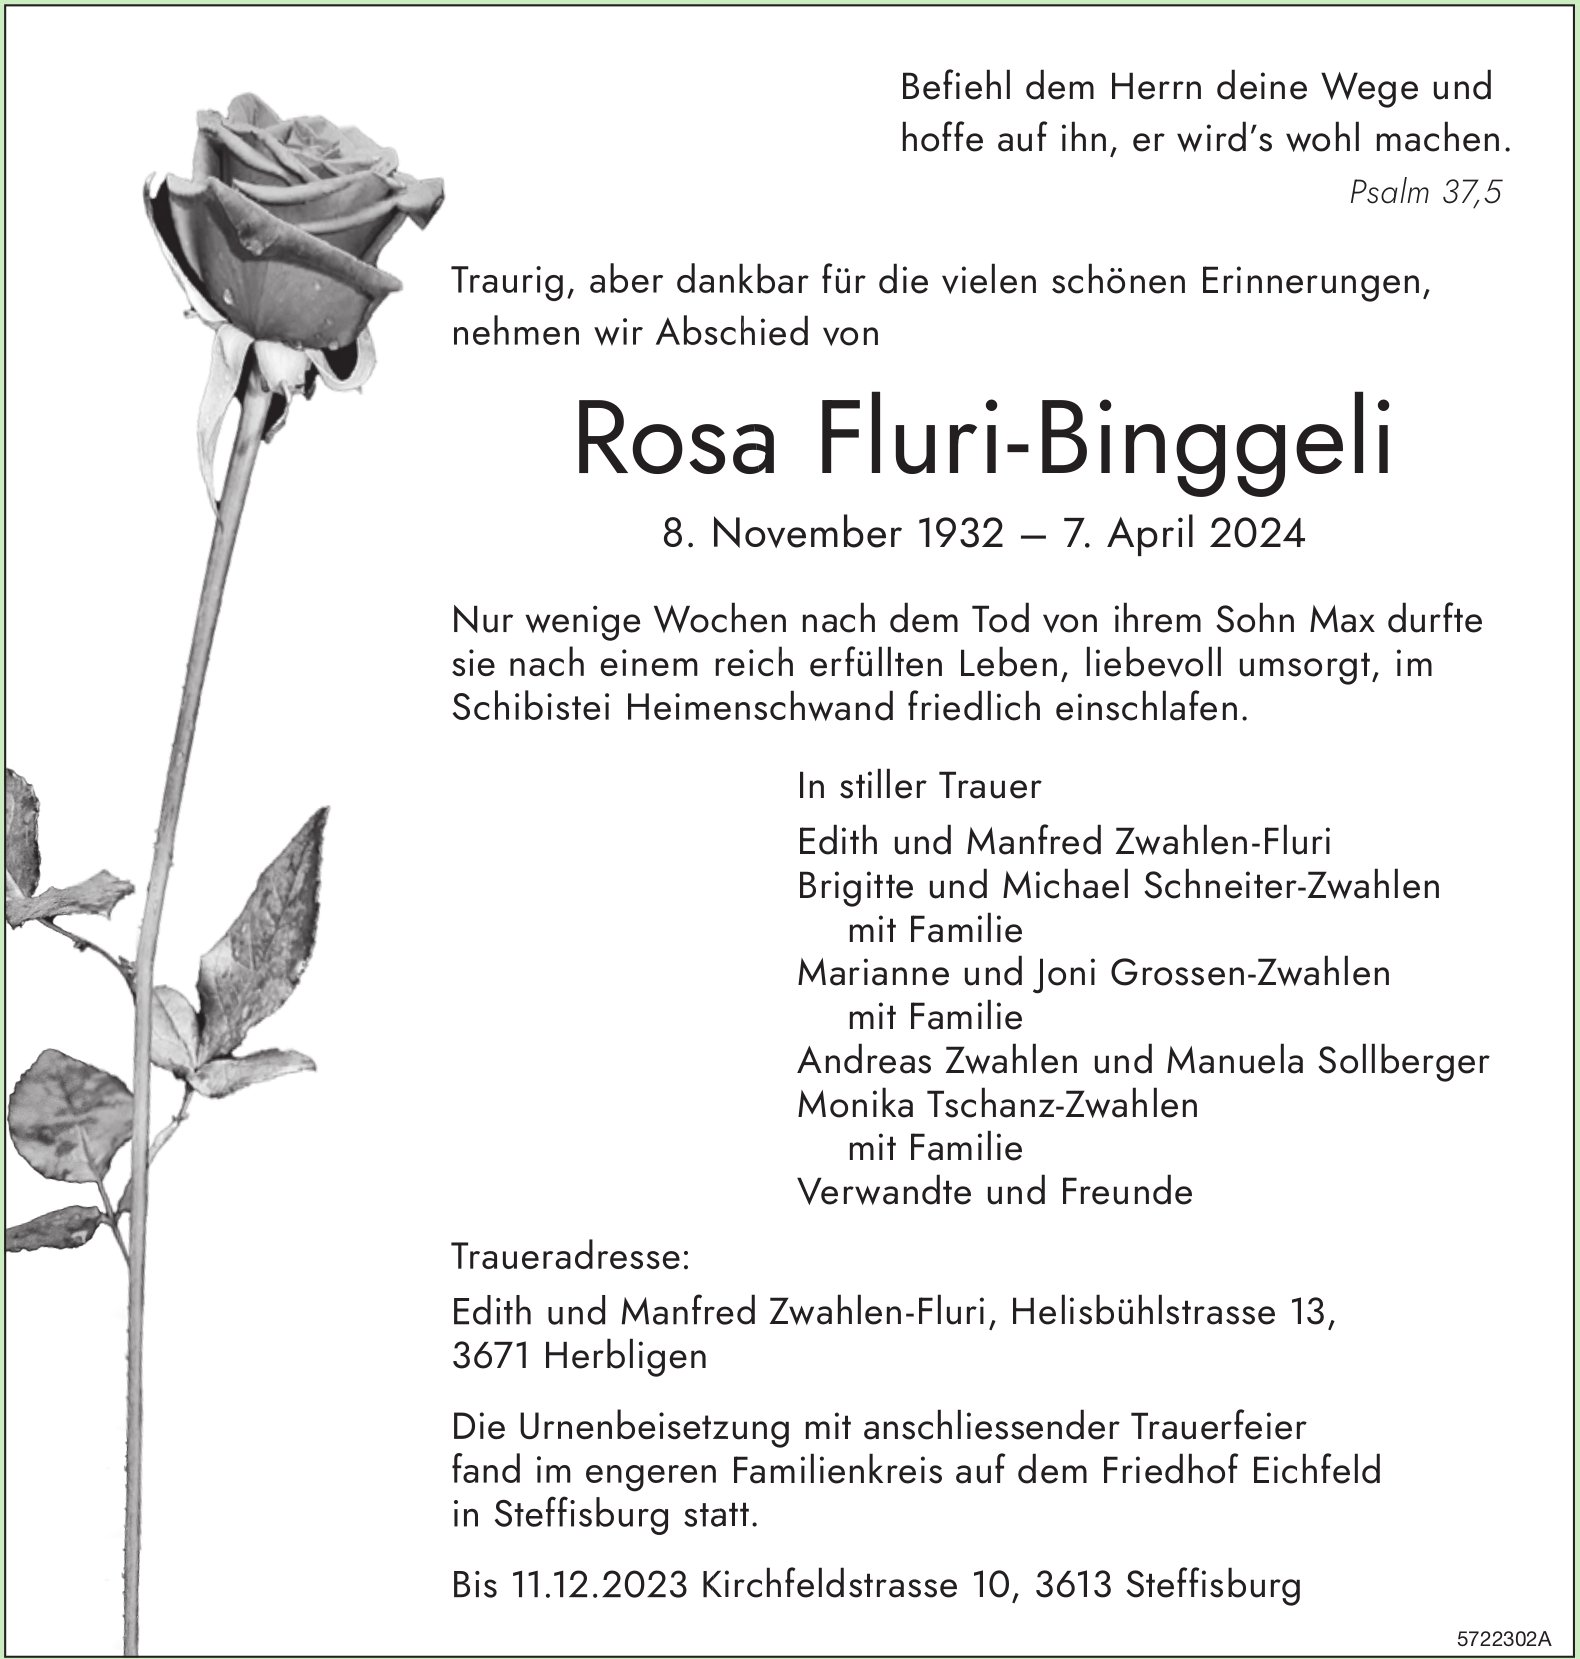 Fluri-Binggeli Rosa, April 2024 / TA